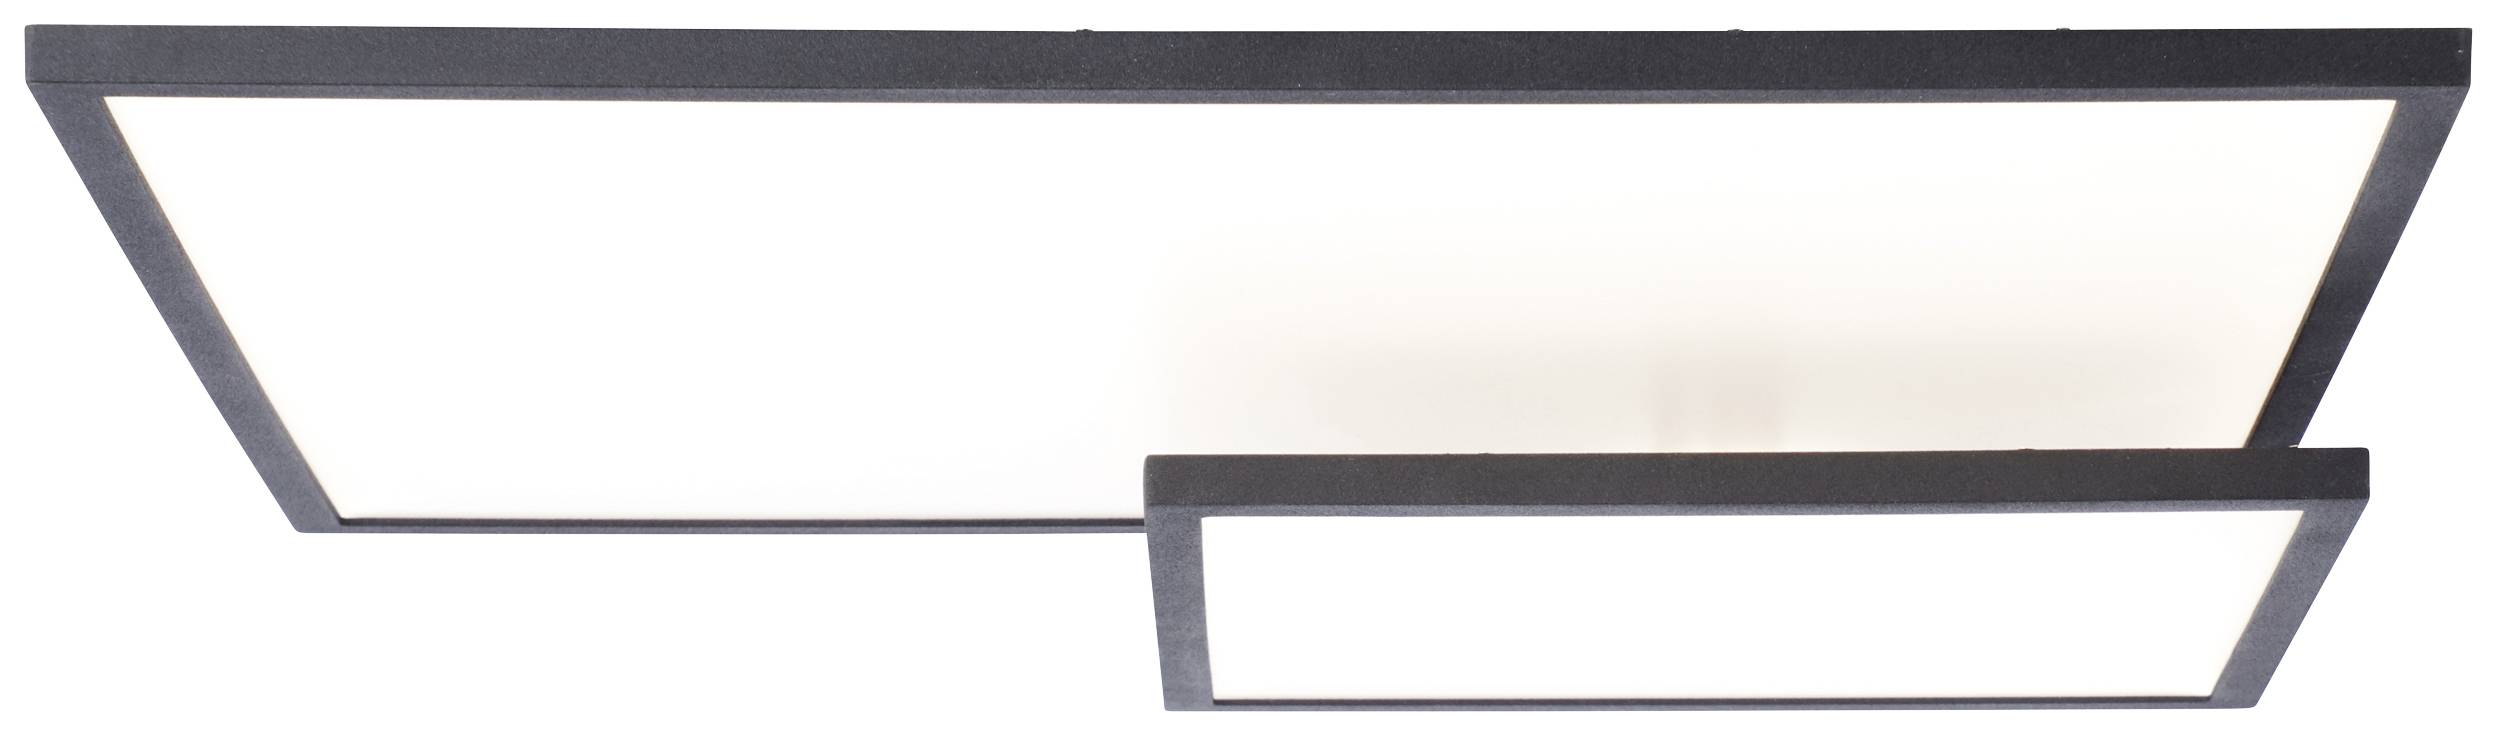 BRILLIANT Bility G97032/06 LED-Panel EEK: F (A - G) 36 W Schwarz, Weiß